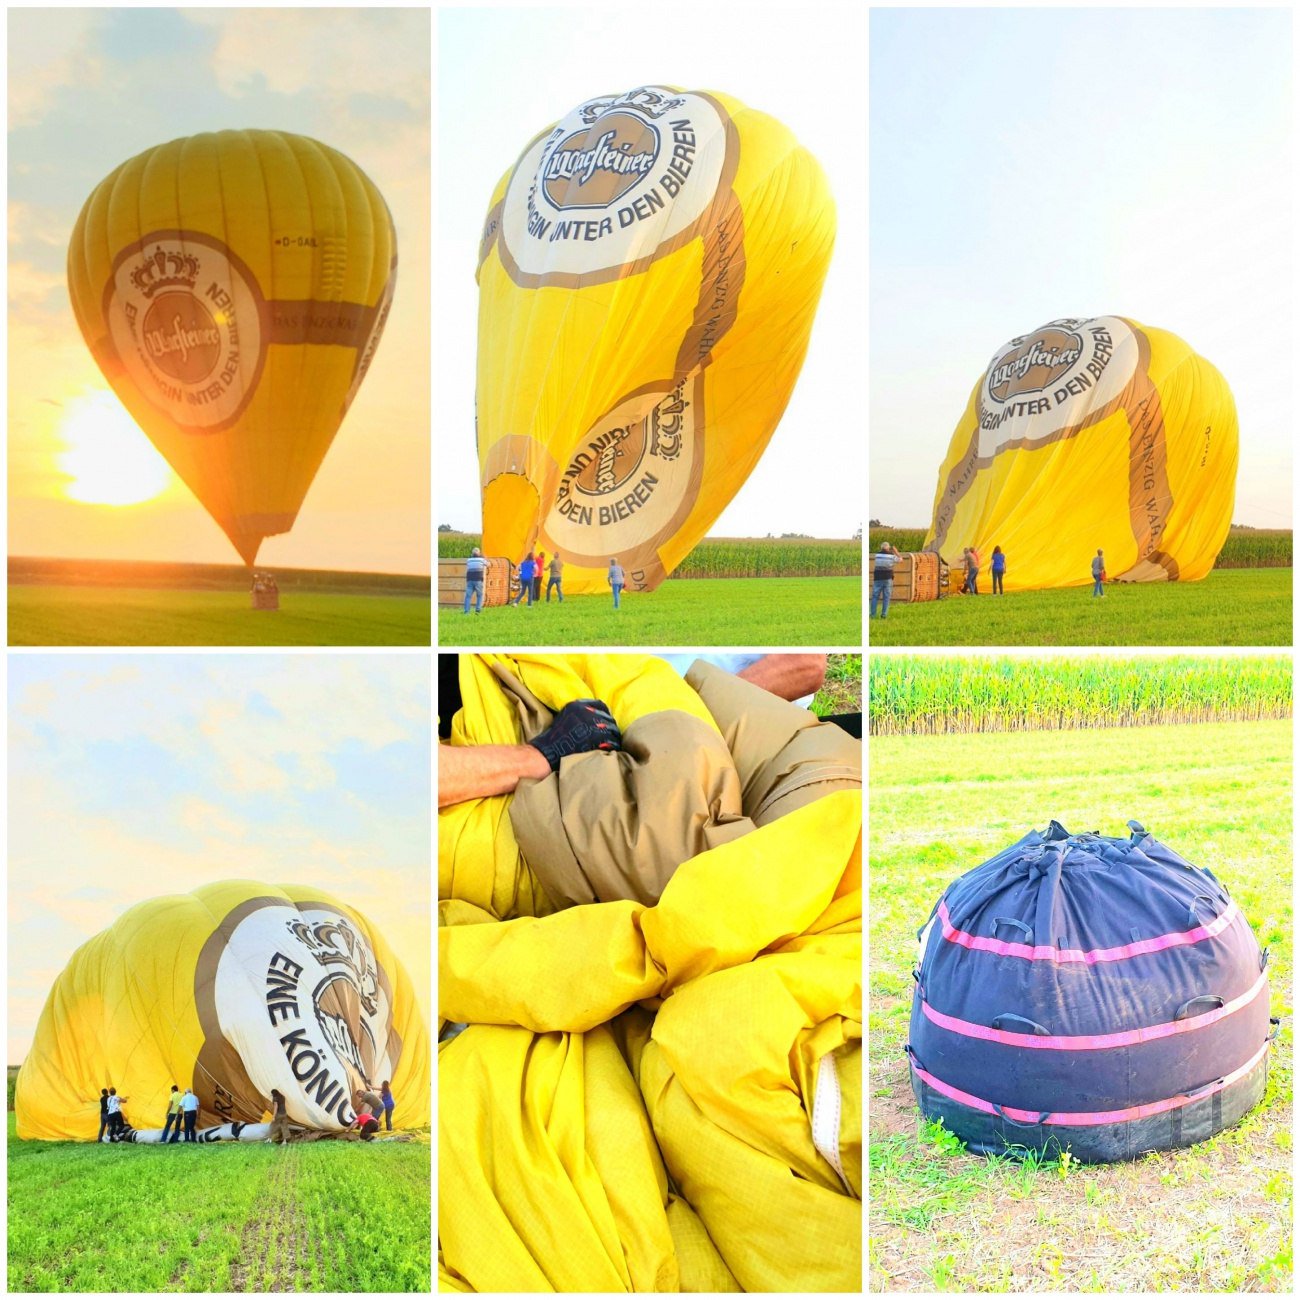 Foto: Martin Zehrer - Von der Landung eines Heißluft-Ballons bis hin zu dessen Verpackung... sehr interessant!!!<br />
<br />
Landen -> Aussteigen der Fahrgäste -> Umlegen des Ballons mit vereinten Kräf 